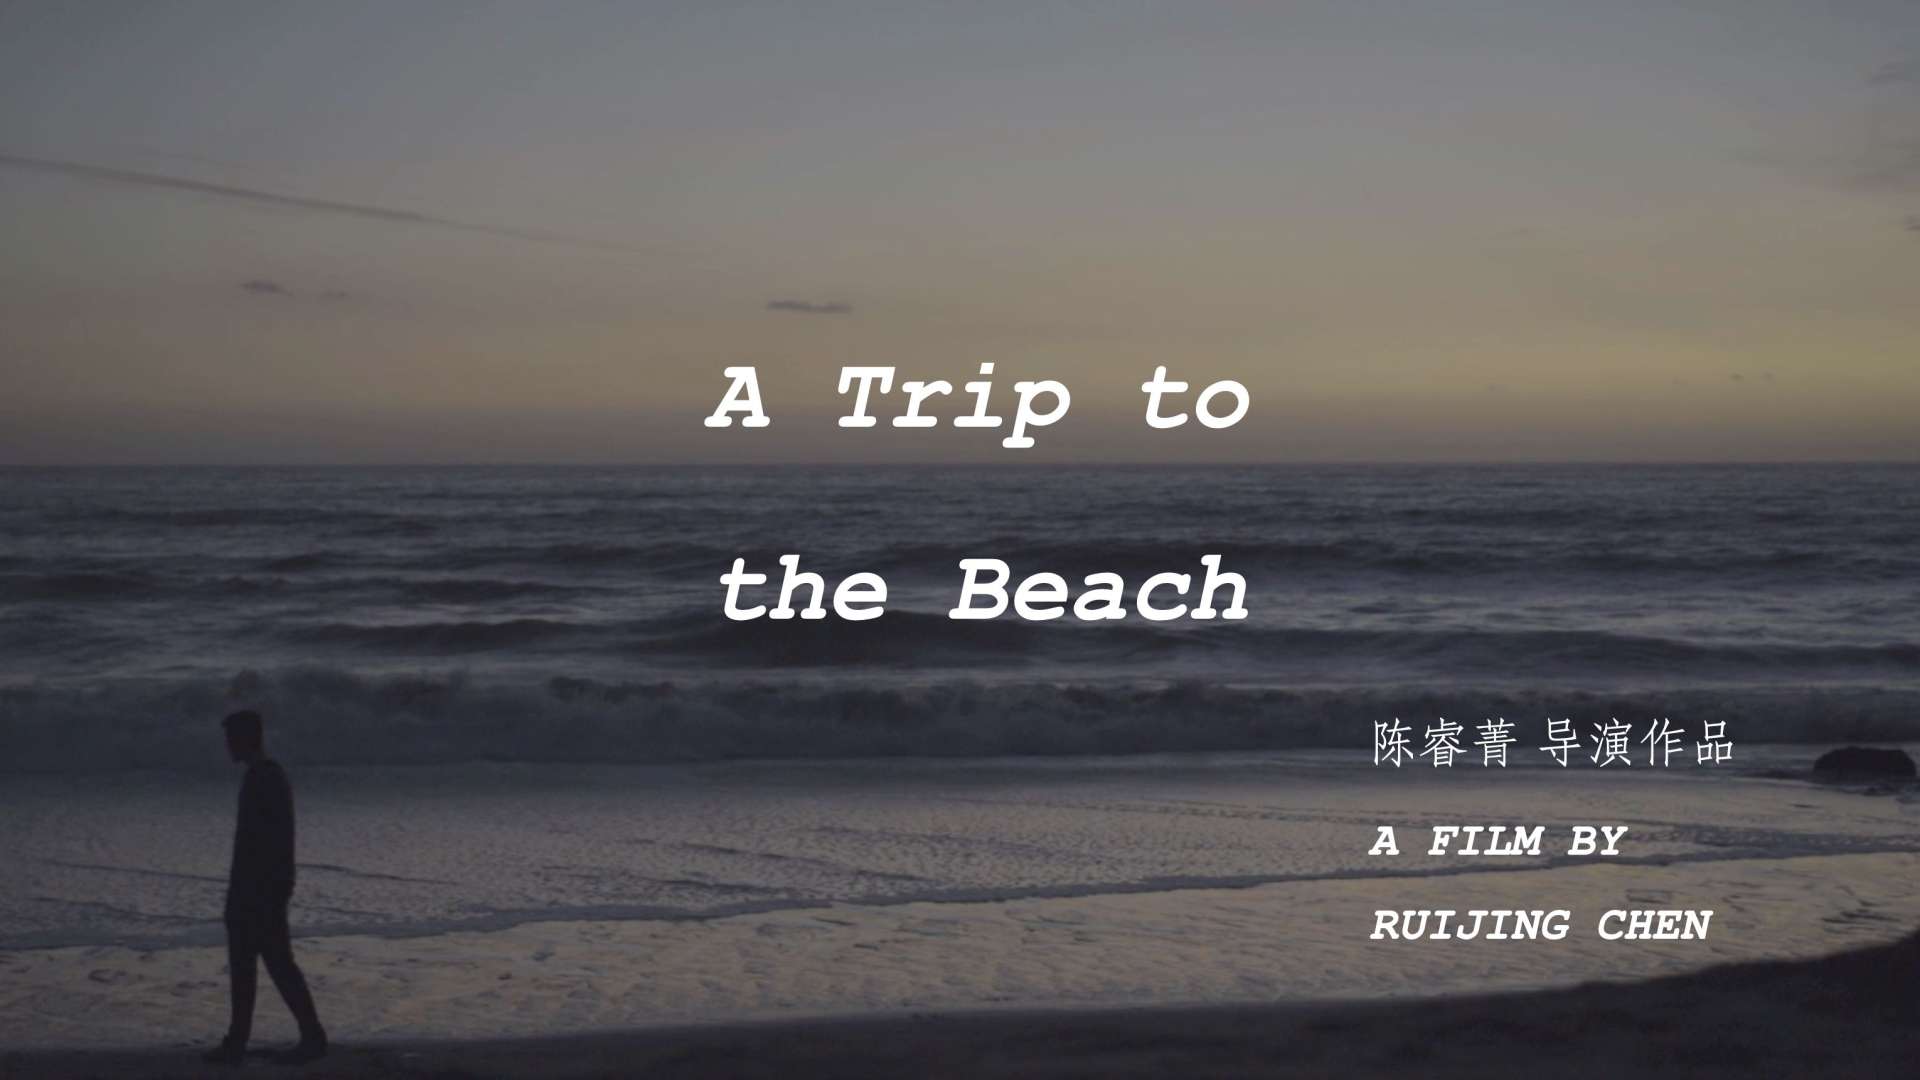 一镜到底实验短片《旅程尽头的海》（ATriptotheBeach）陈睿菁导演作品